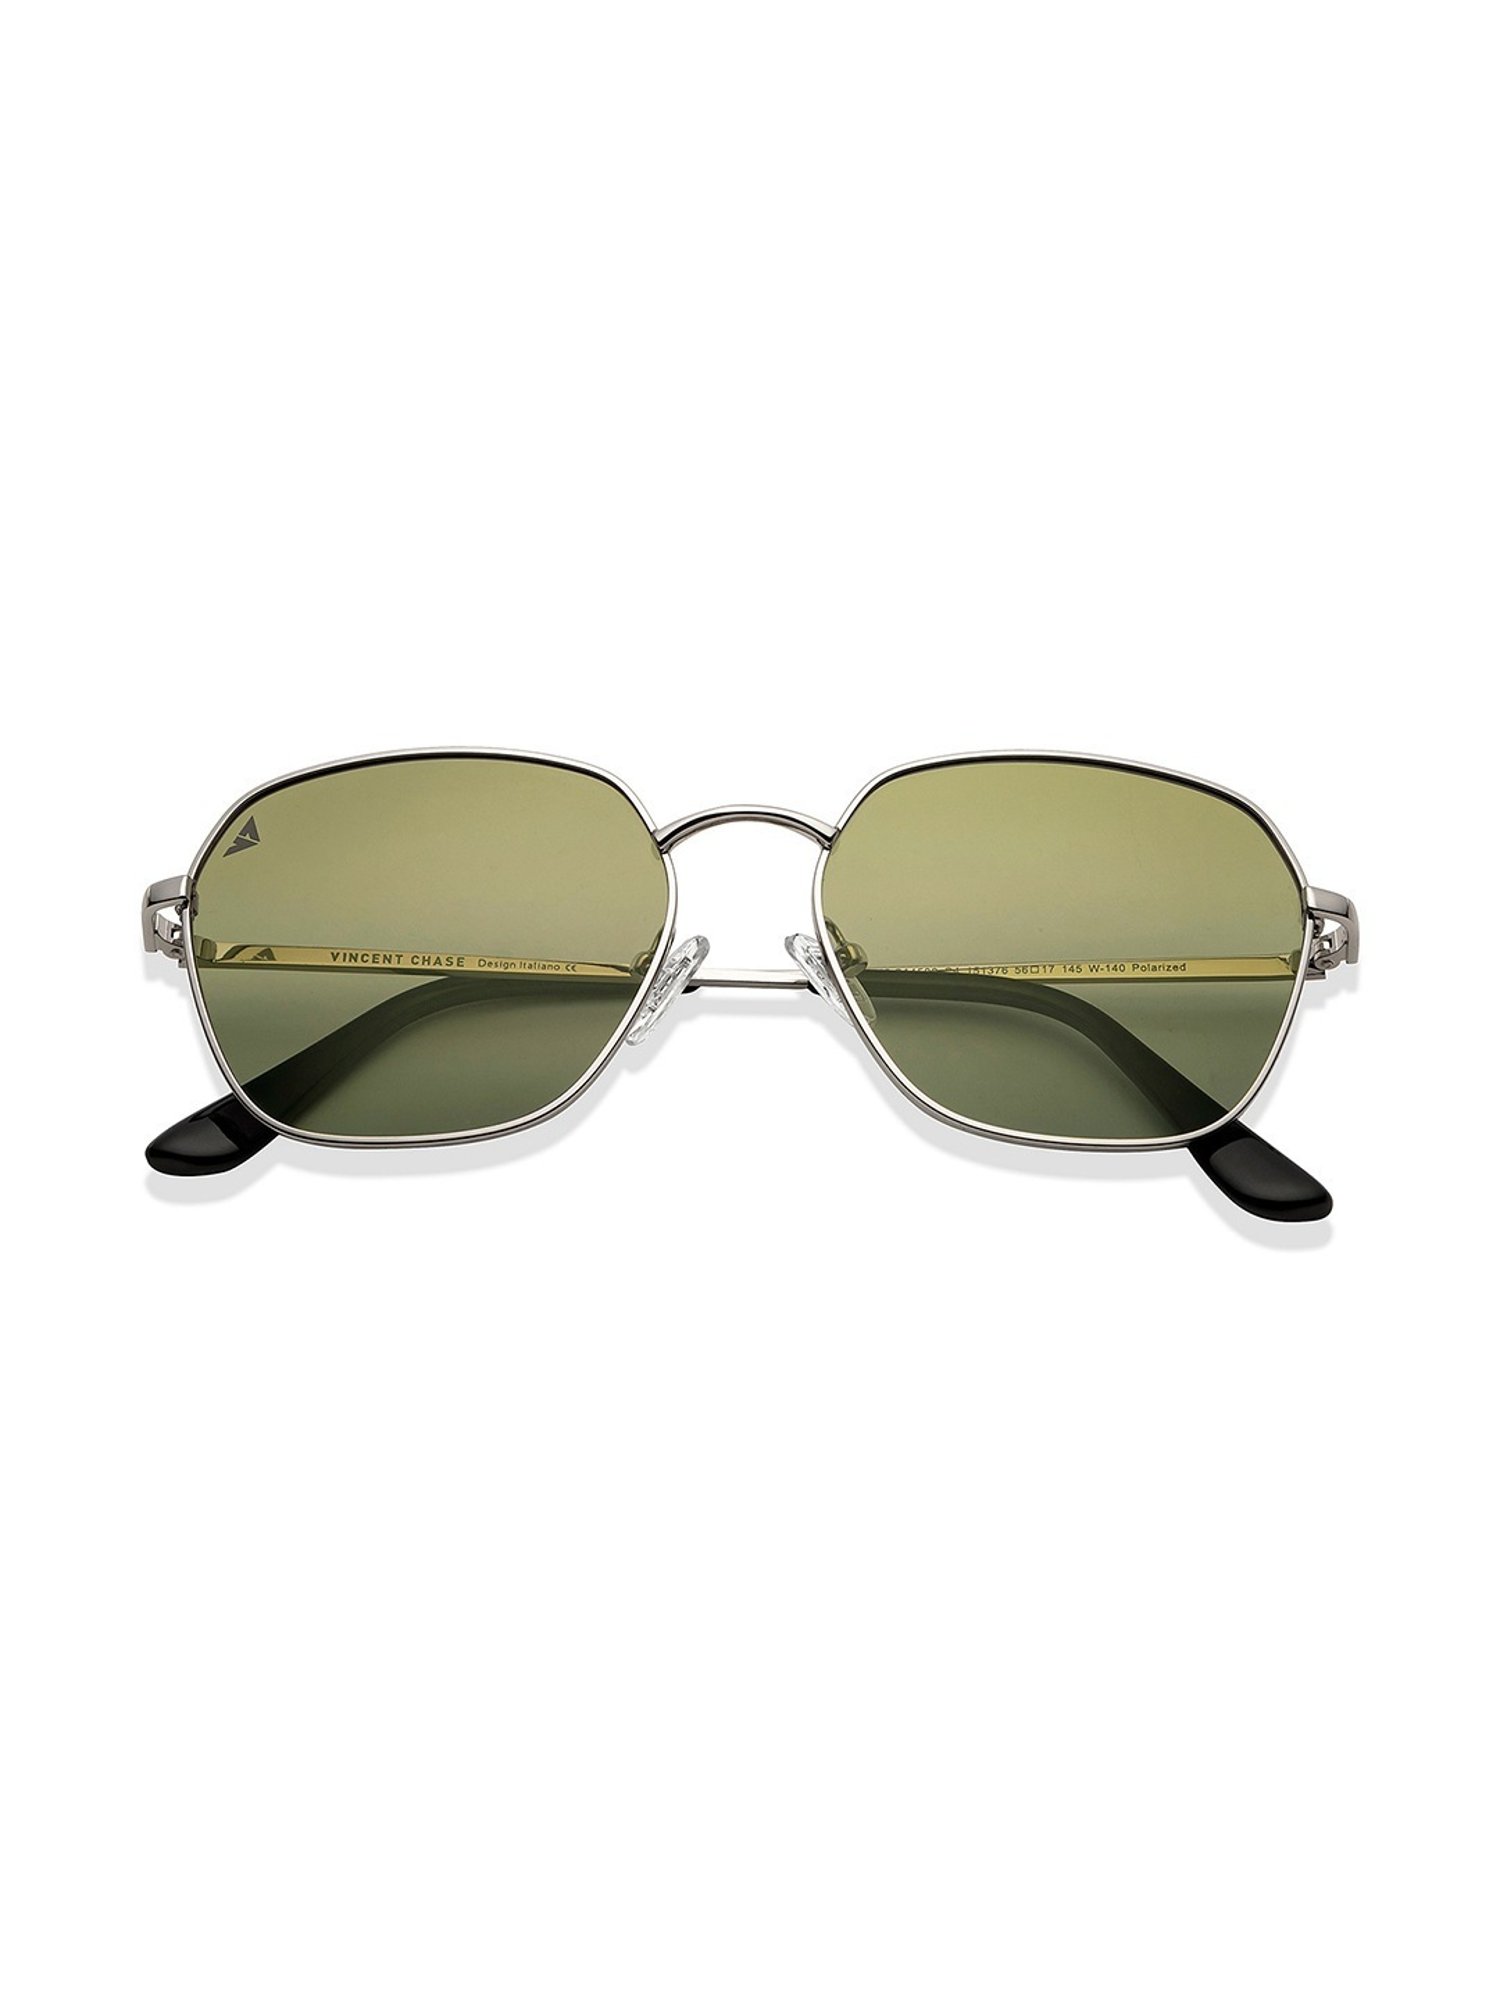 Buy VINCENT CHASE by Lenskart Clubmaster Sunglasses Blue For Men & Women  Online @ Best Prices in India | Flipkart.com